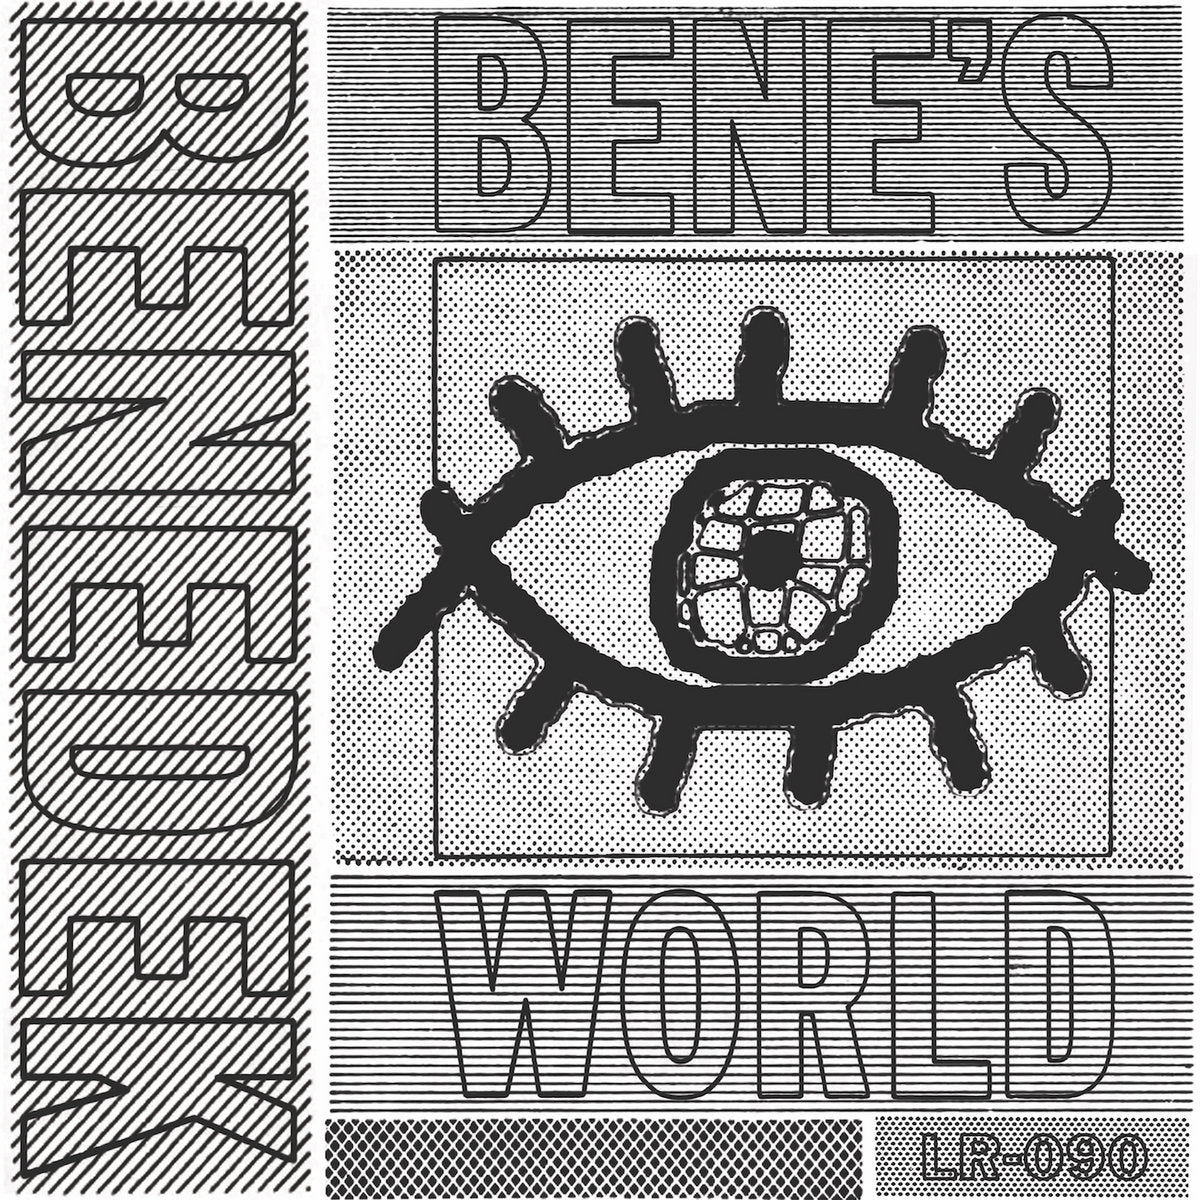 Bene's World (New 12")